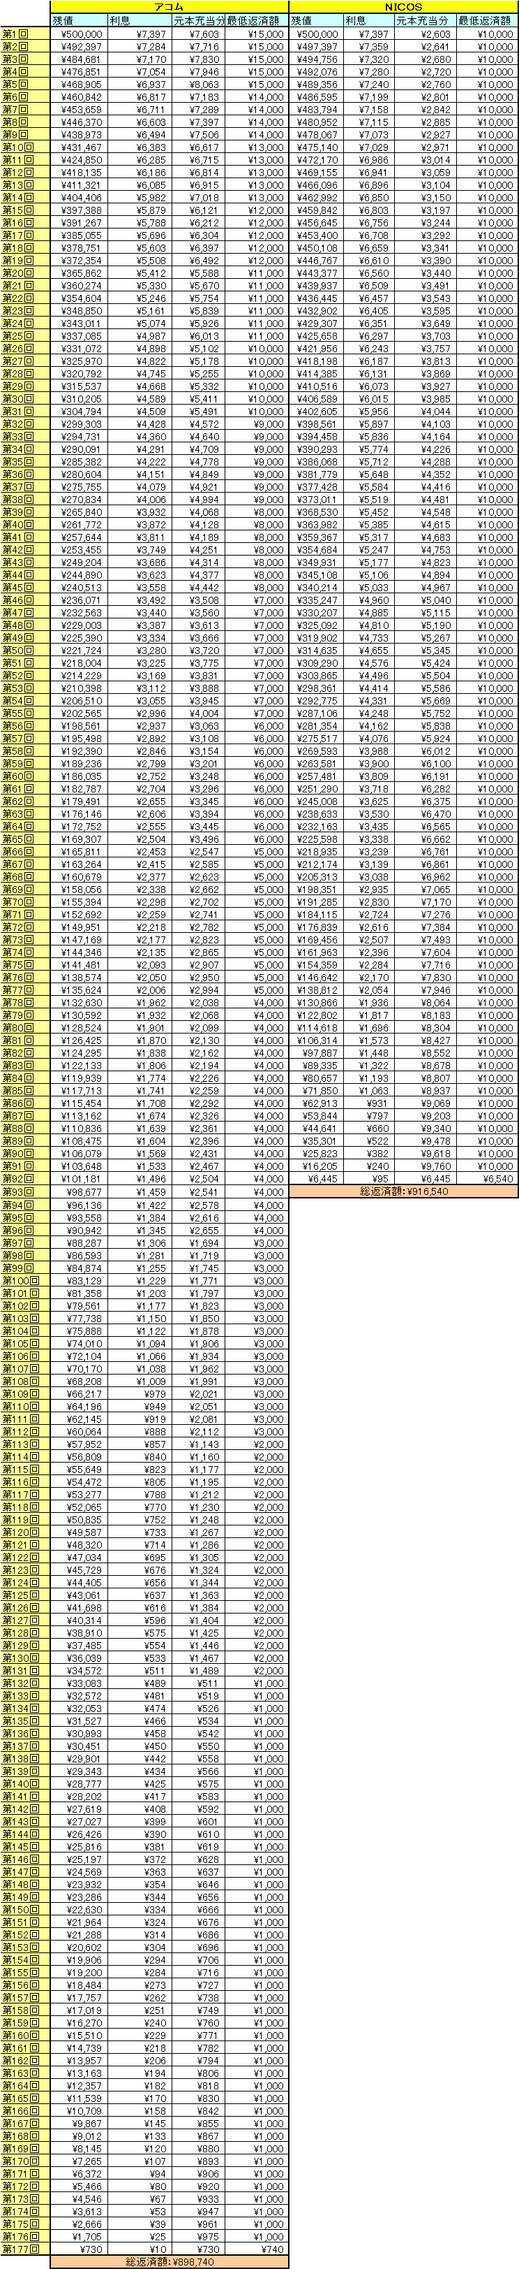 三菱ＵＦＪグループ内のアコムとUFJ NICOSカードのキャッシングで返済額の比較